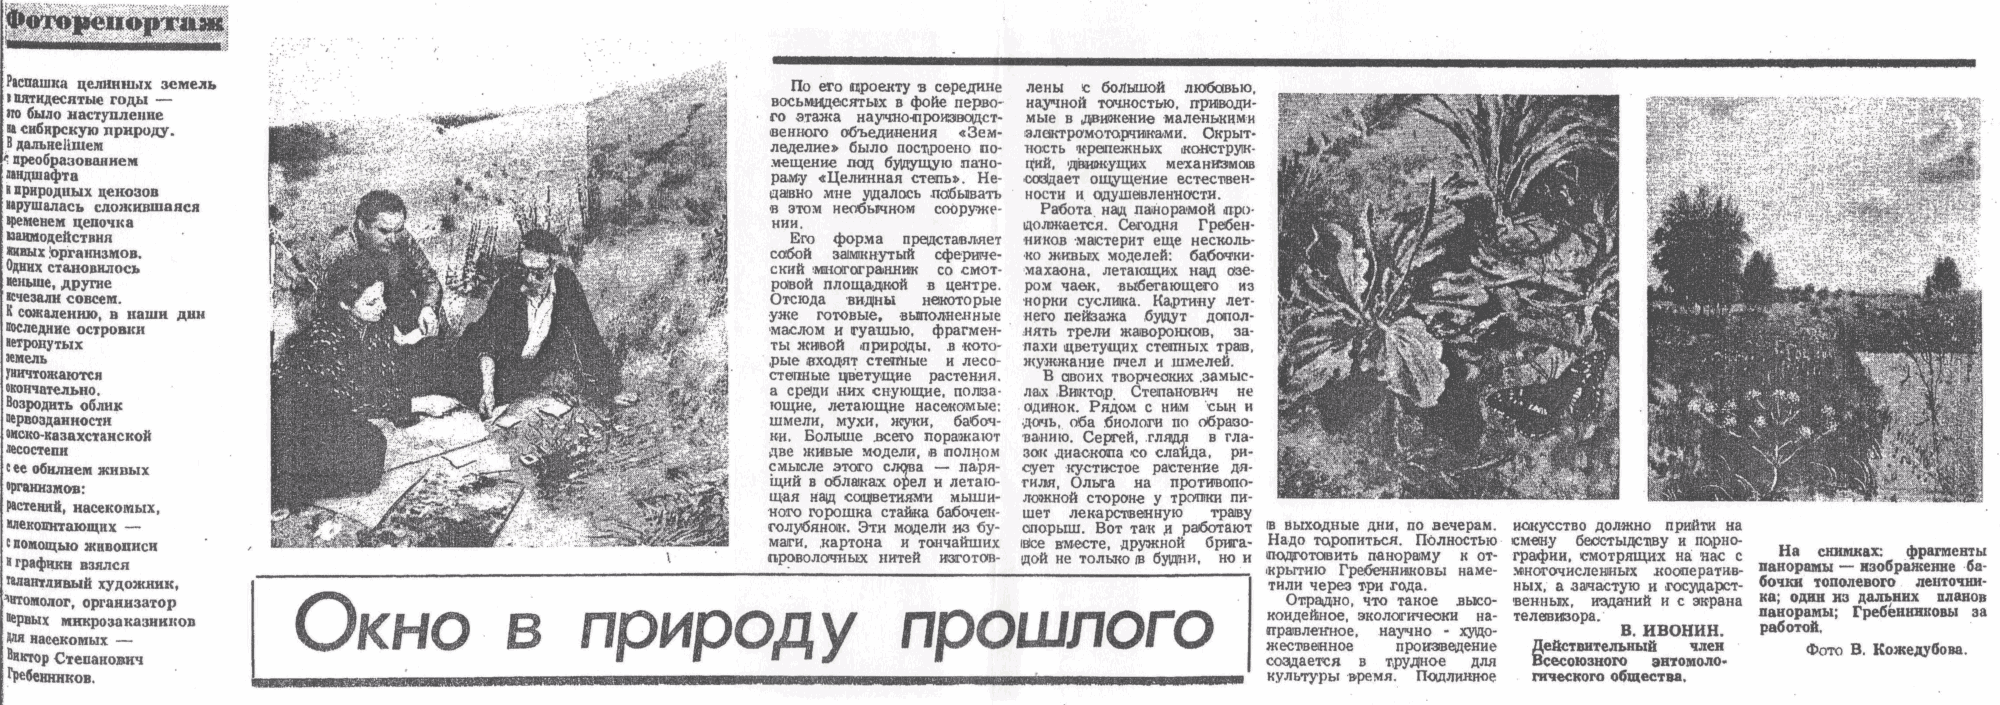 Окно в природу прошлого. В. Ивонин. Советская Сибирь, 26.02.1991.